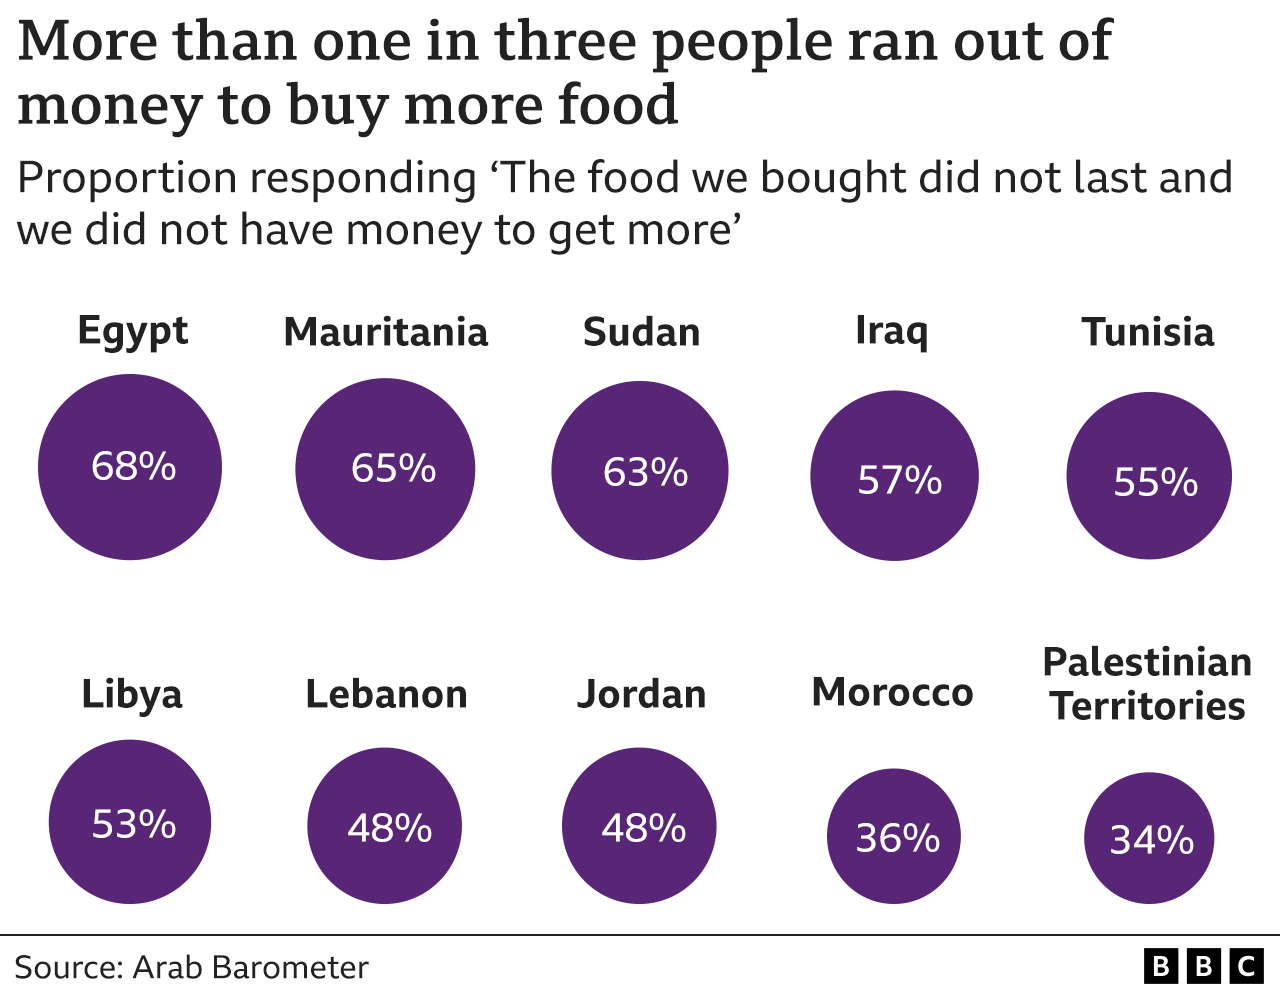 Диаграмма, показывающая, сколько людей не смогли оставить еду на столе, прежде чем накопили достаточно денег, чтобы купить еще. Палестинские территории и Марокко имели самую низкую долю, но все же выше, чем каждая третья. В Египте была самая высокая доля: более двух из трех человек (68%) сказали, что это происходит иногда или часто.